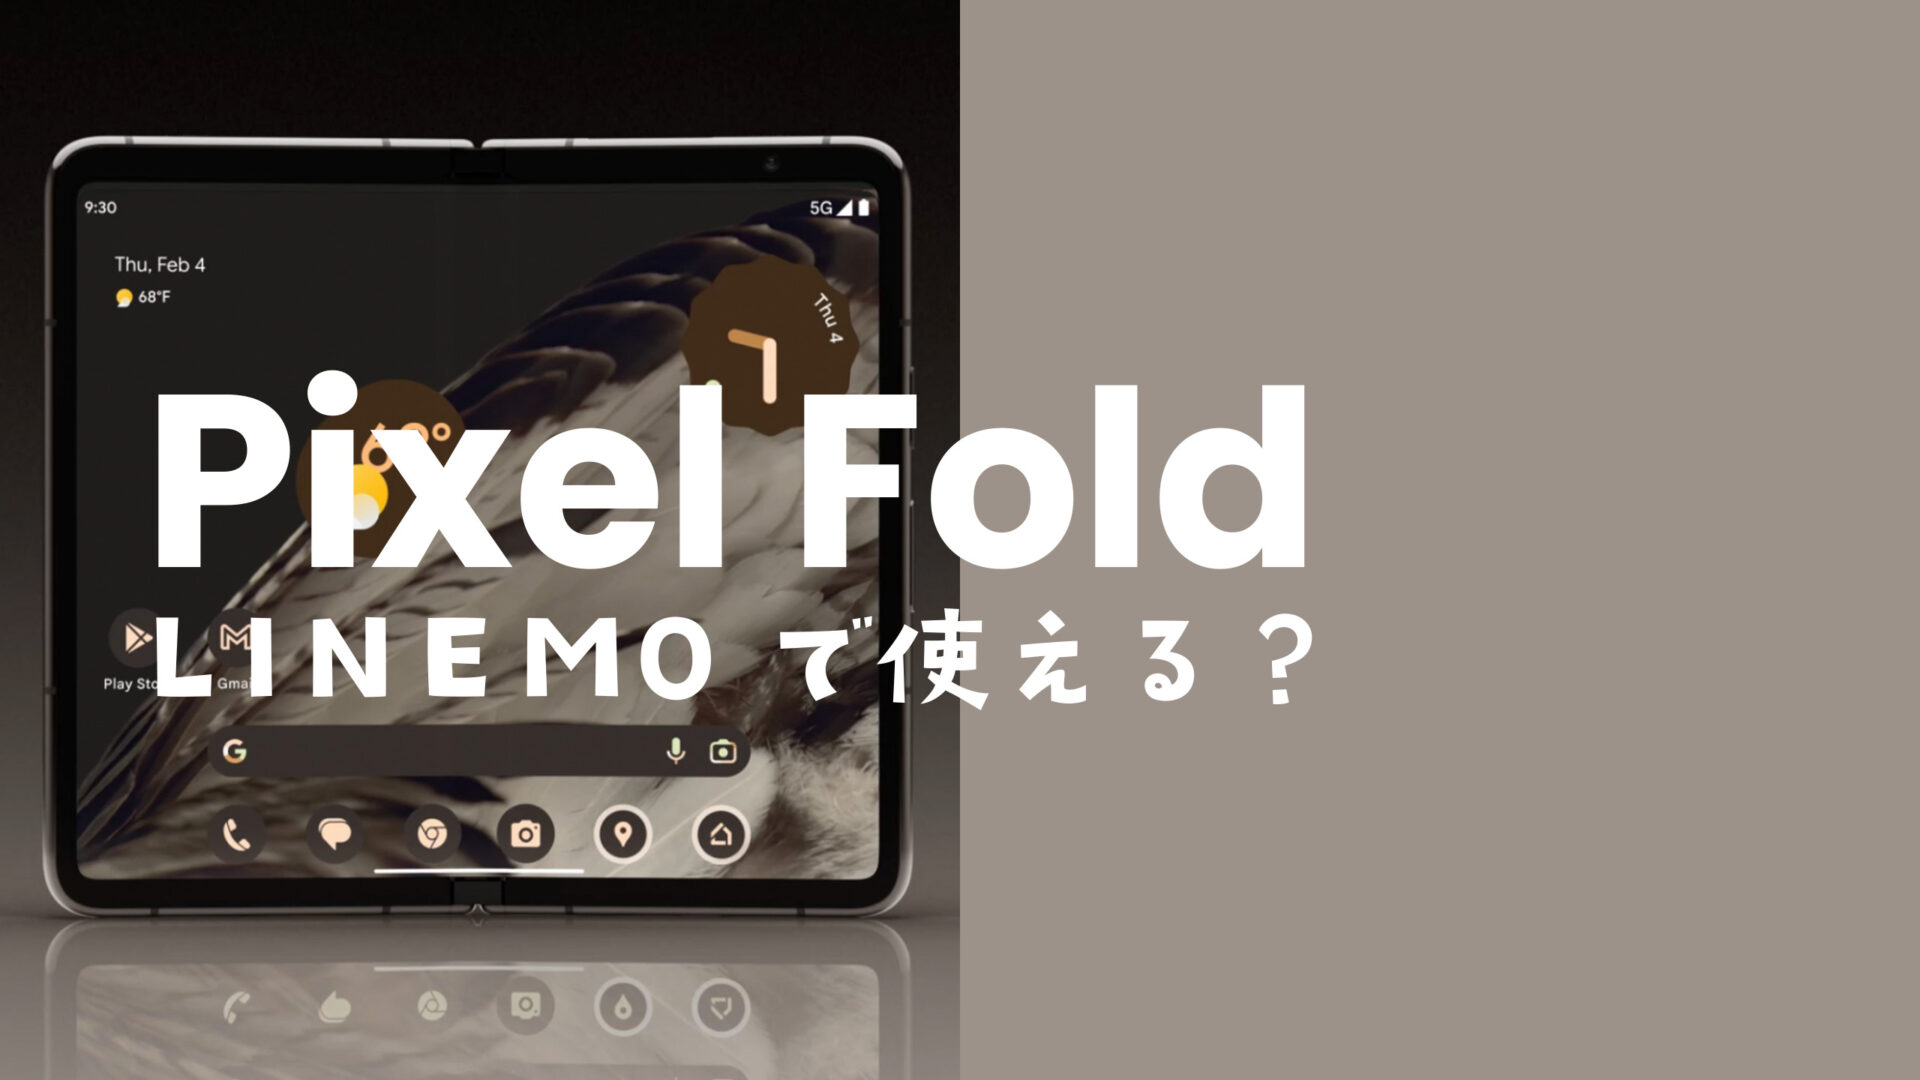 LINEMO(ラインモ)でGoogle Pixel Foldは使えて対応機種に含まれるのサムネイル画像